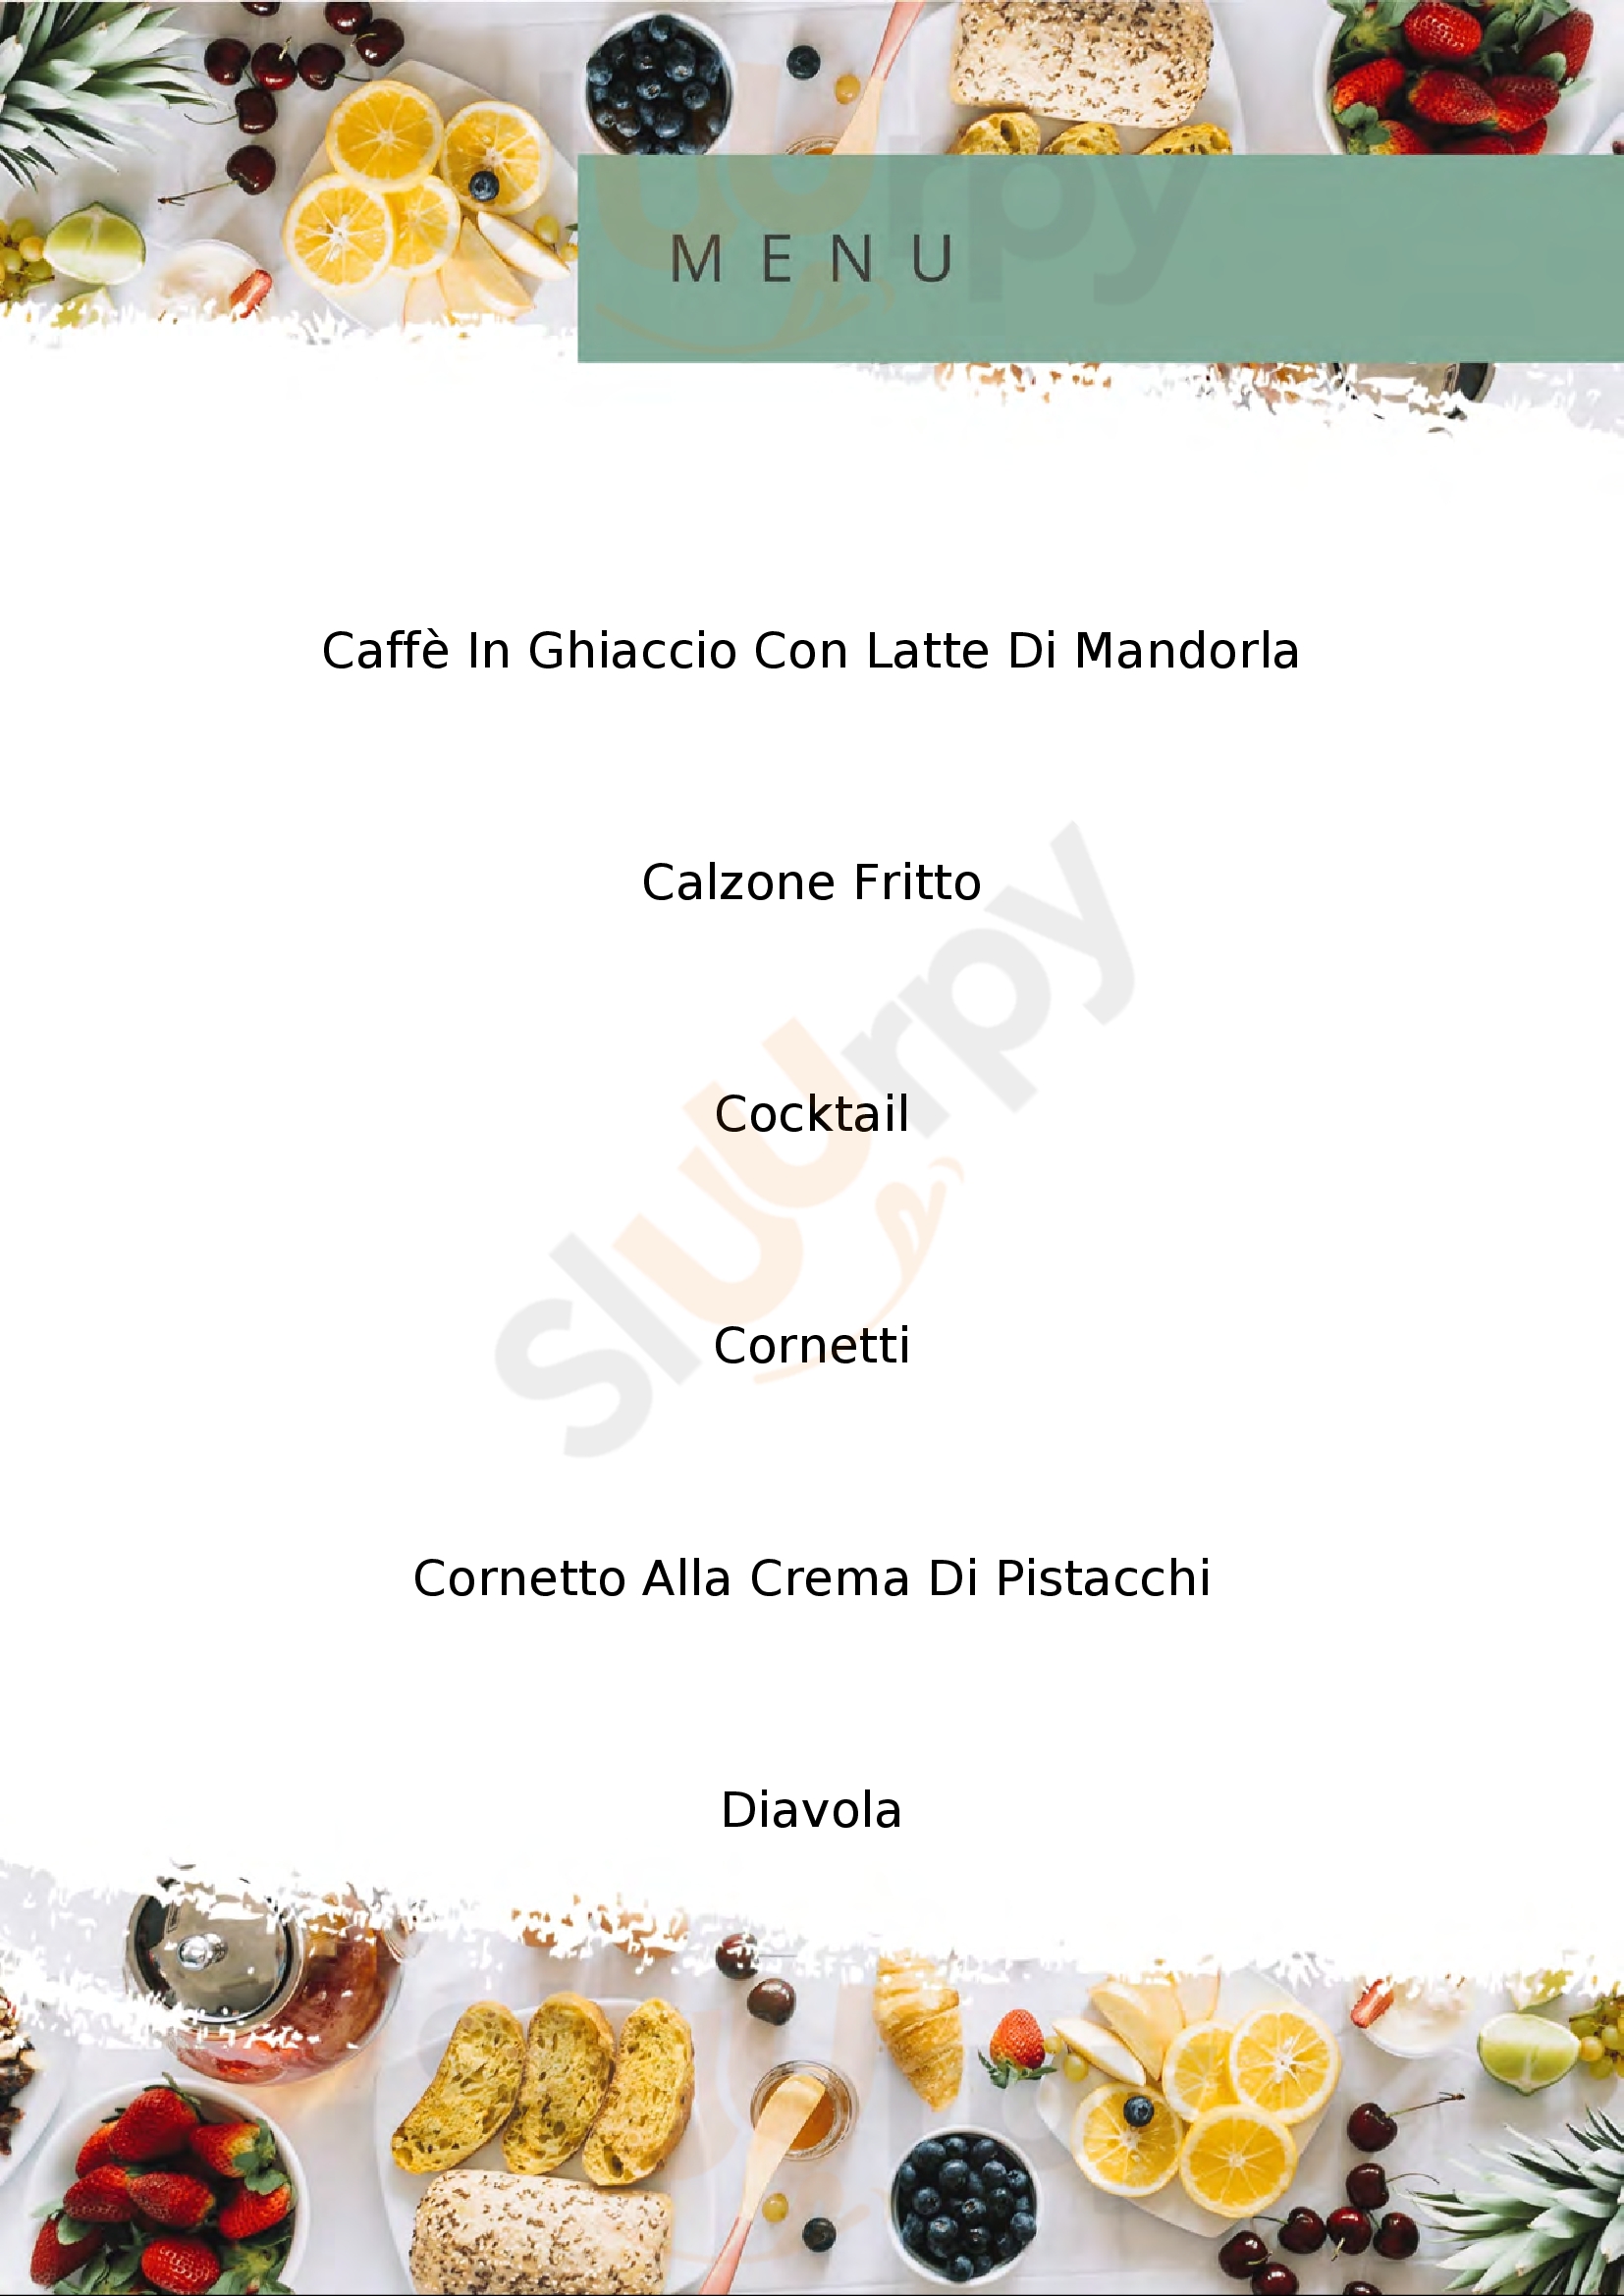 Origini Cafè Tuglie menù 1 pagina